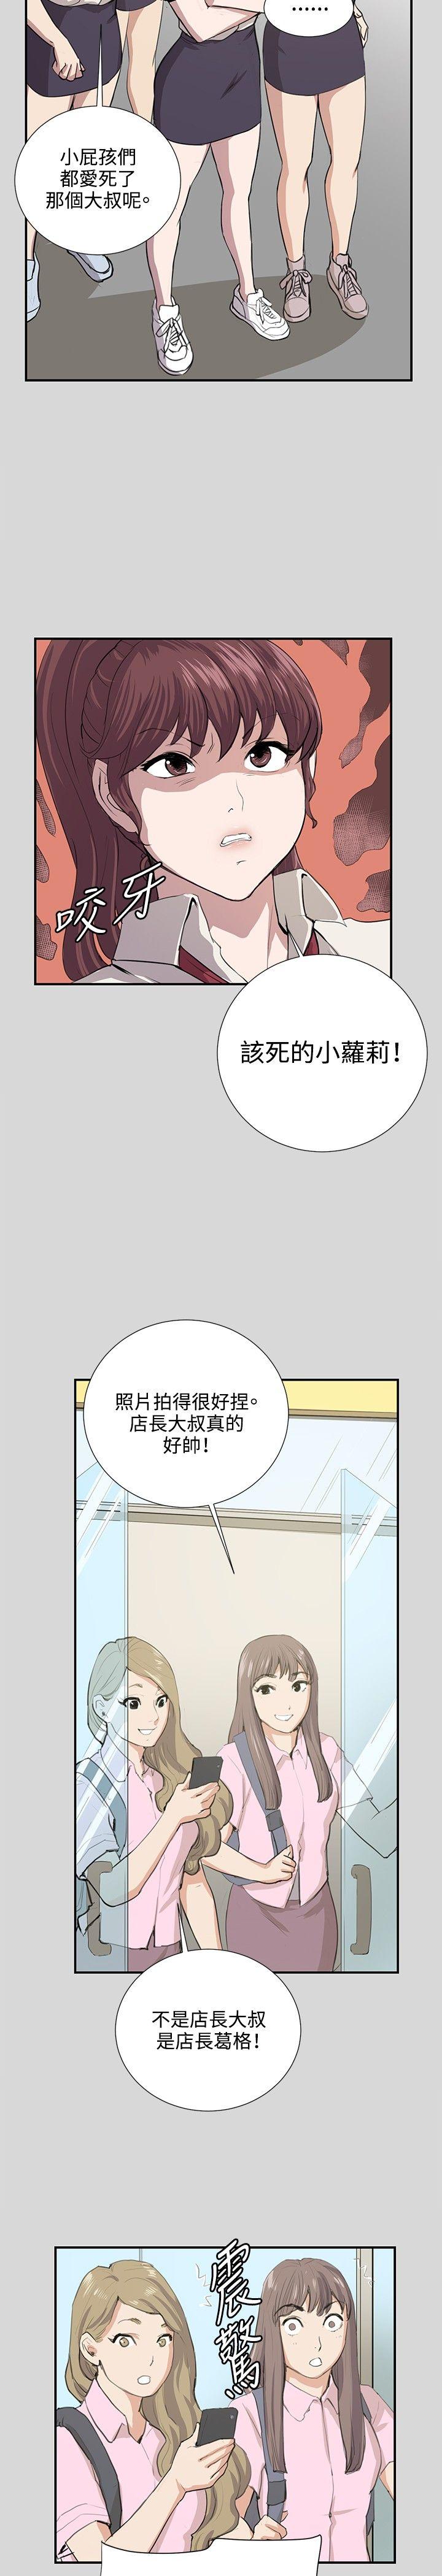 韩国污漫画 深夜便利店 第56话 21